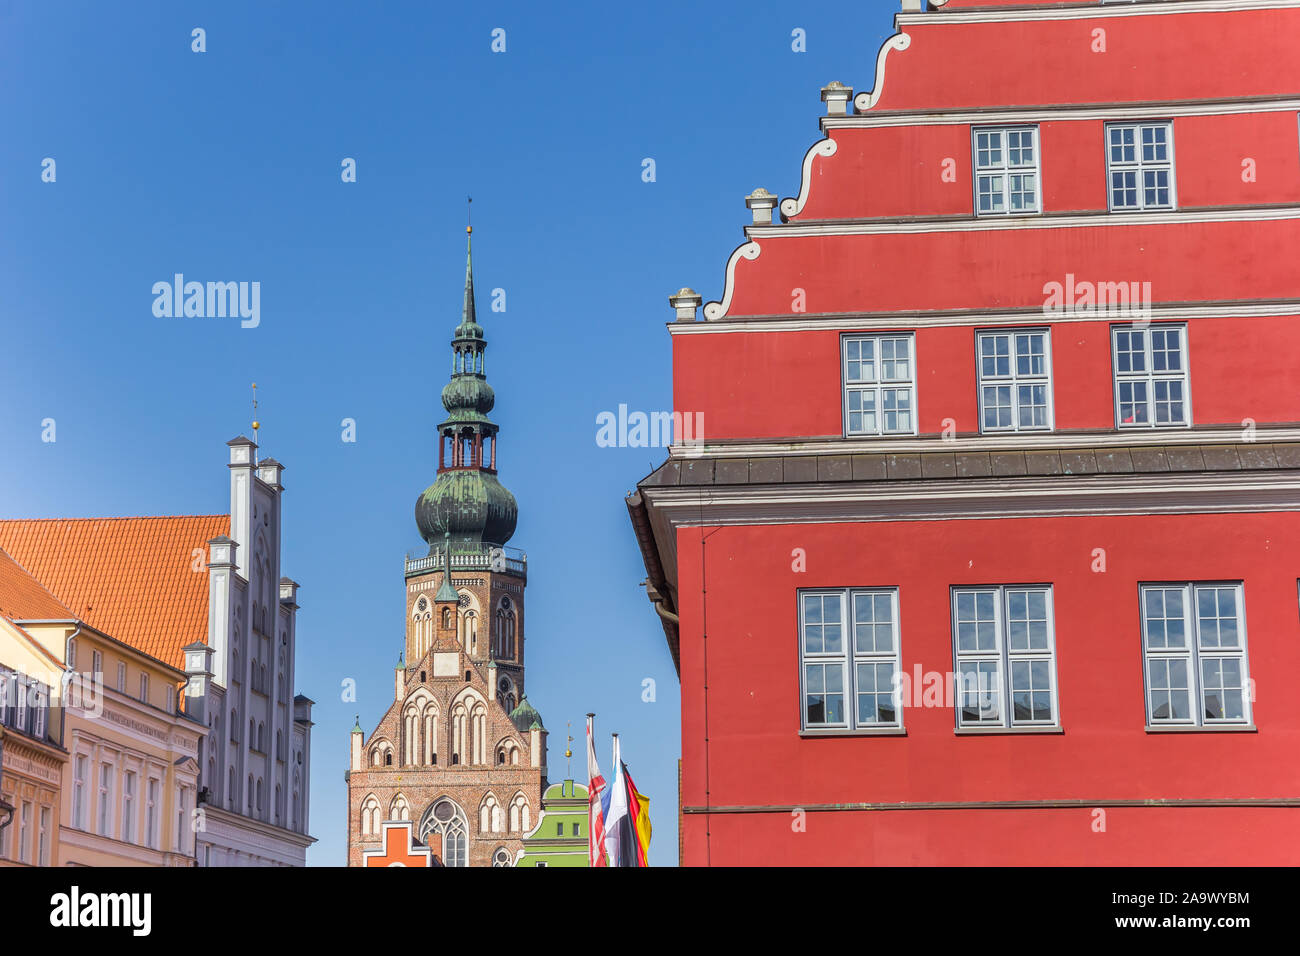 L'hôtel de ville rouge et clocher de l'église dans la ville hanséatique de Greifswald, Allemagne Banque D'Images